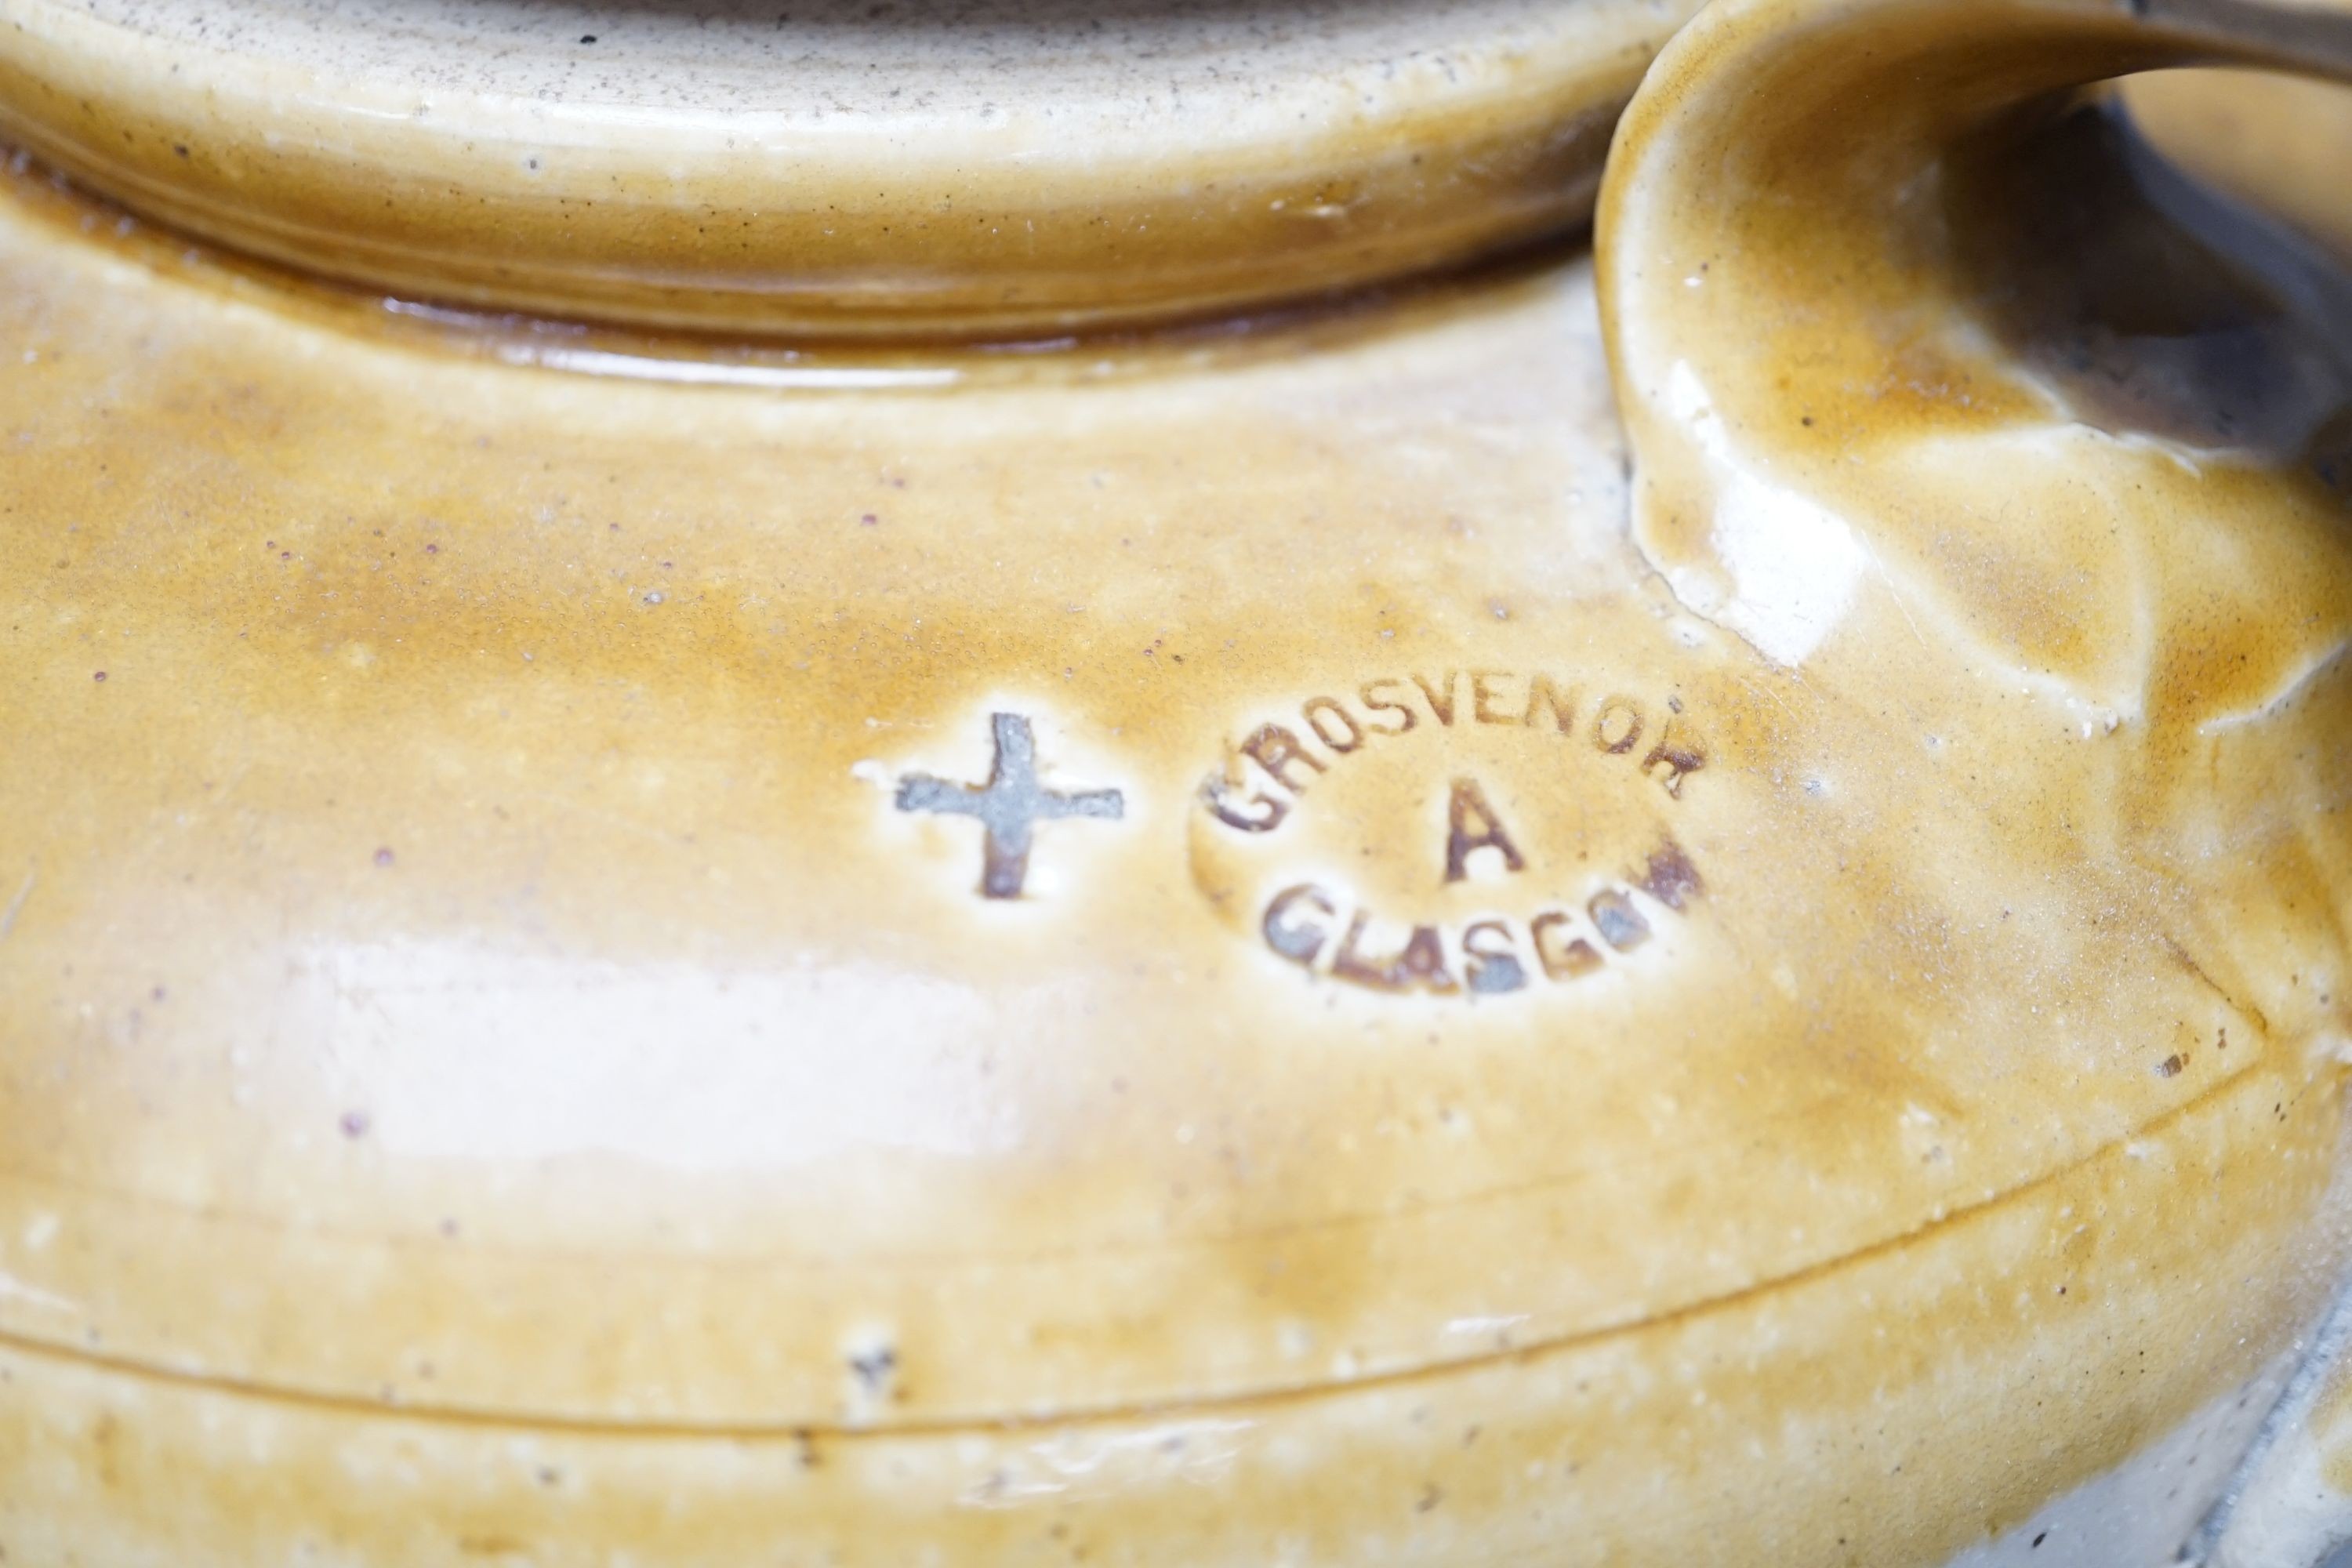 A Grosvenor Glasgow stoneware beer, storage jar, 37 cms high.